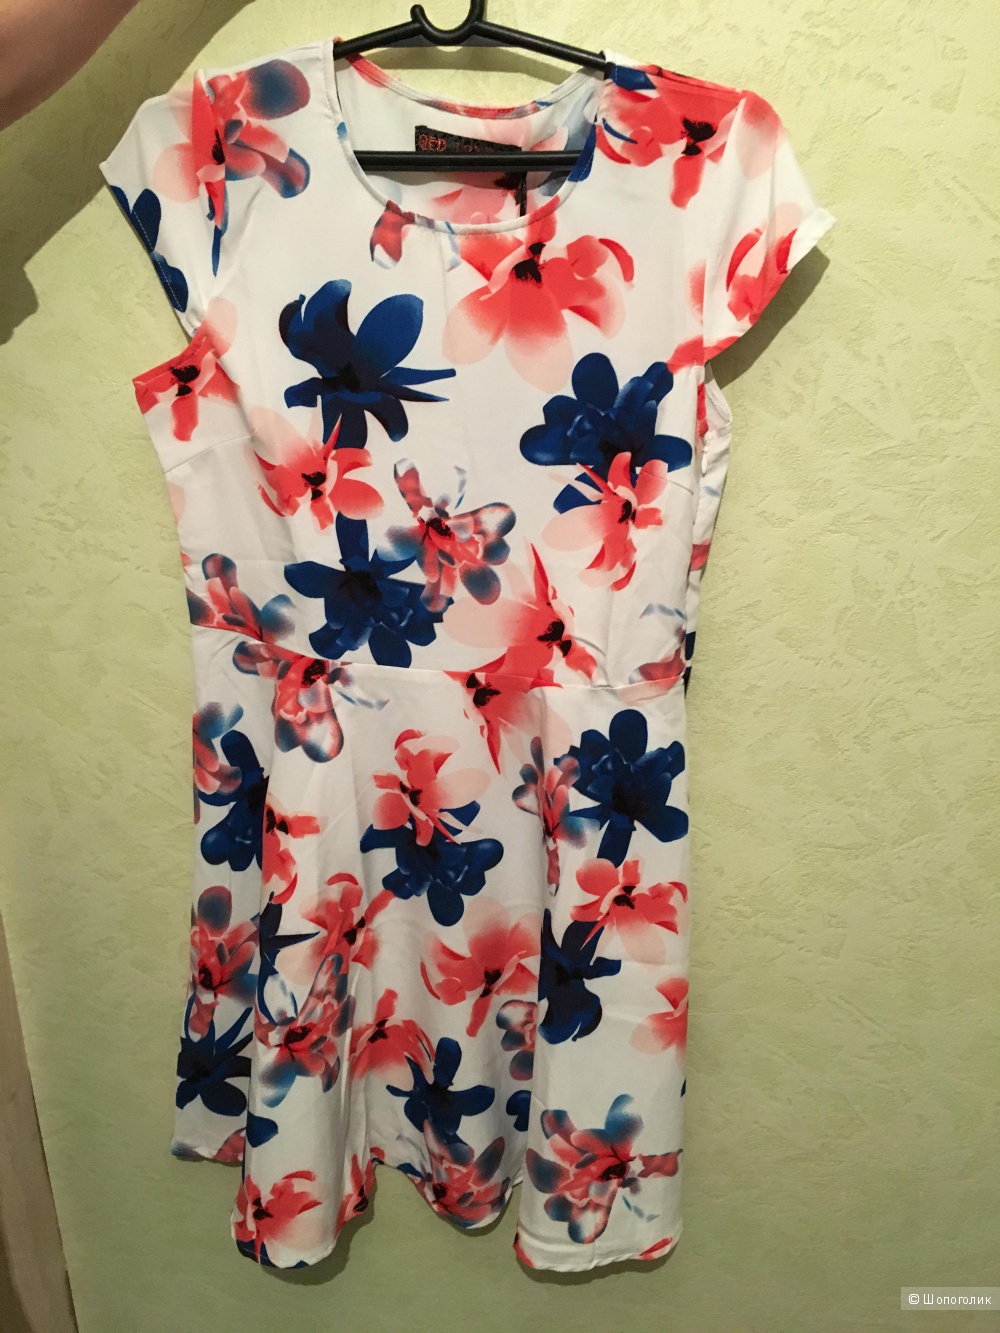 Короткое приталенное платье с цветочным принтом QED London, размер М